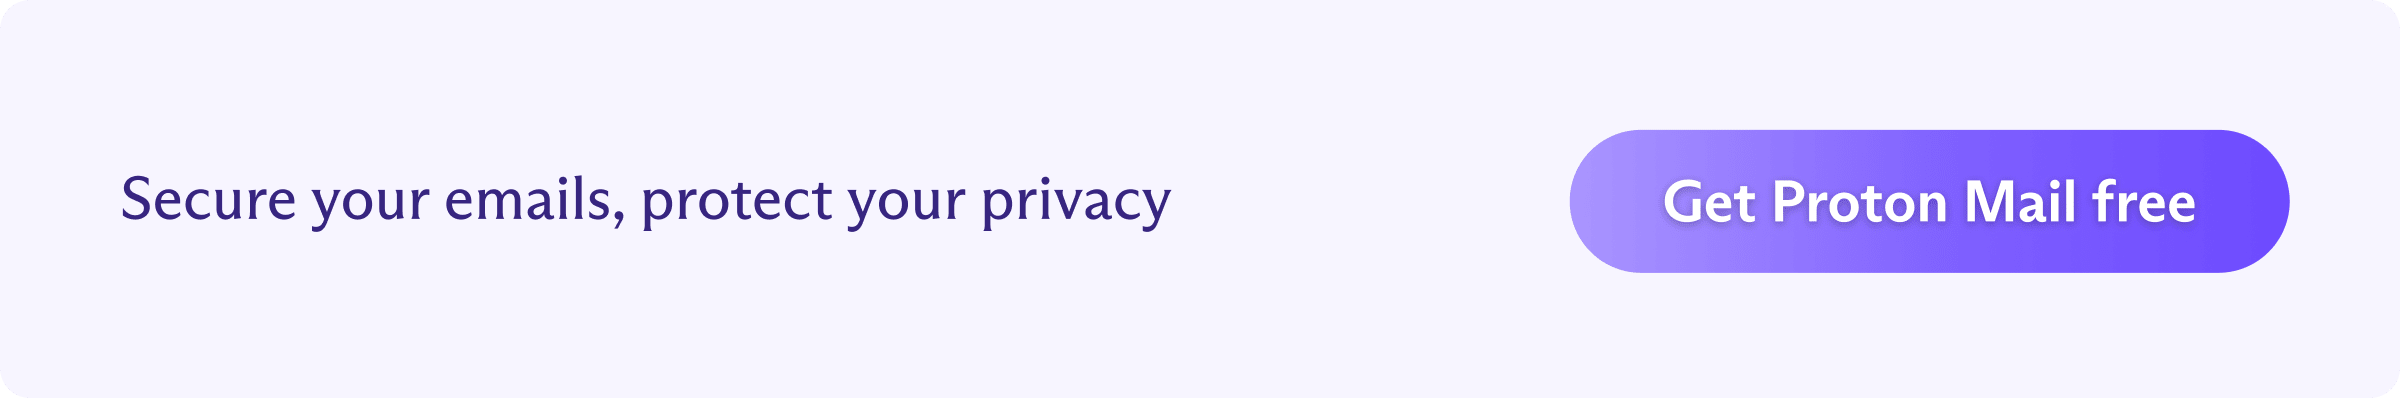 Bouton d'invitation à créer gratuitement un compte Proton Mail